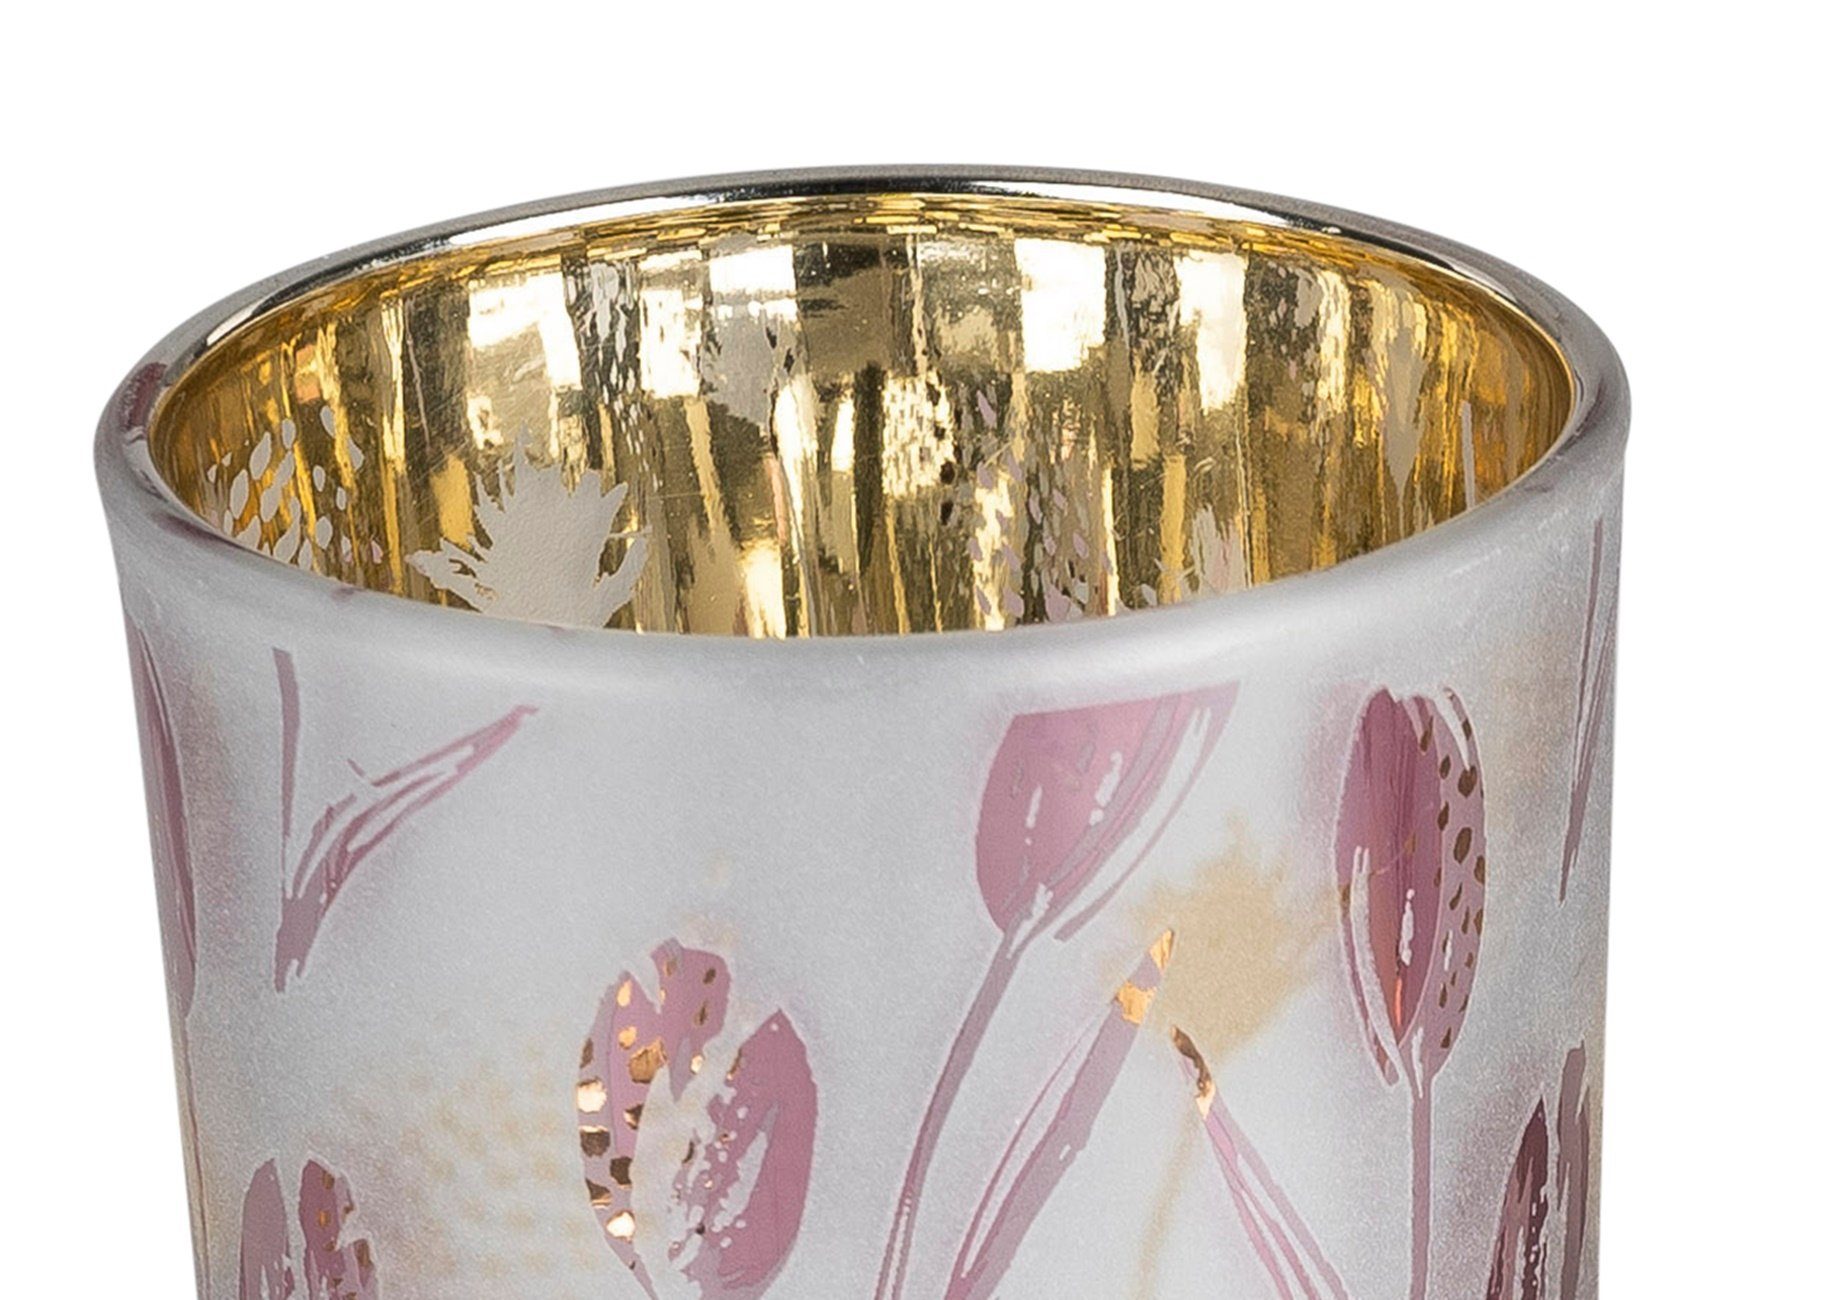 dekojohnson Windlicht Windlicht Teelichthalter Tulpendekor weiß gold 8cm